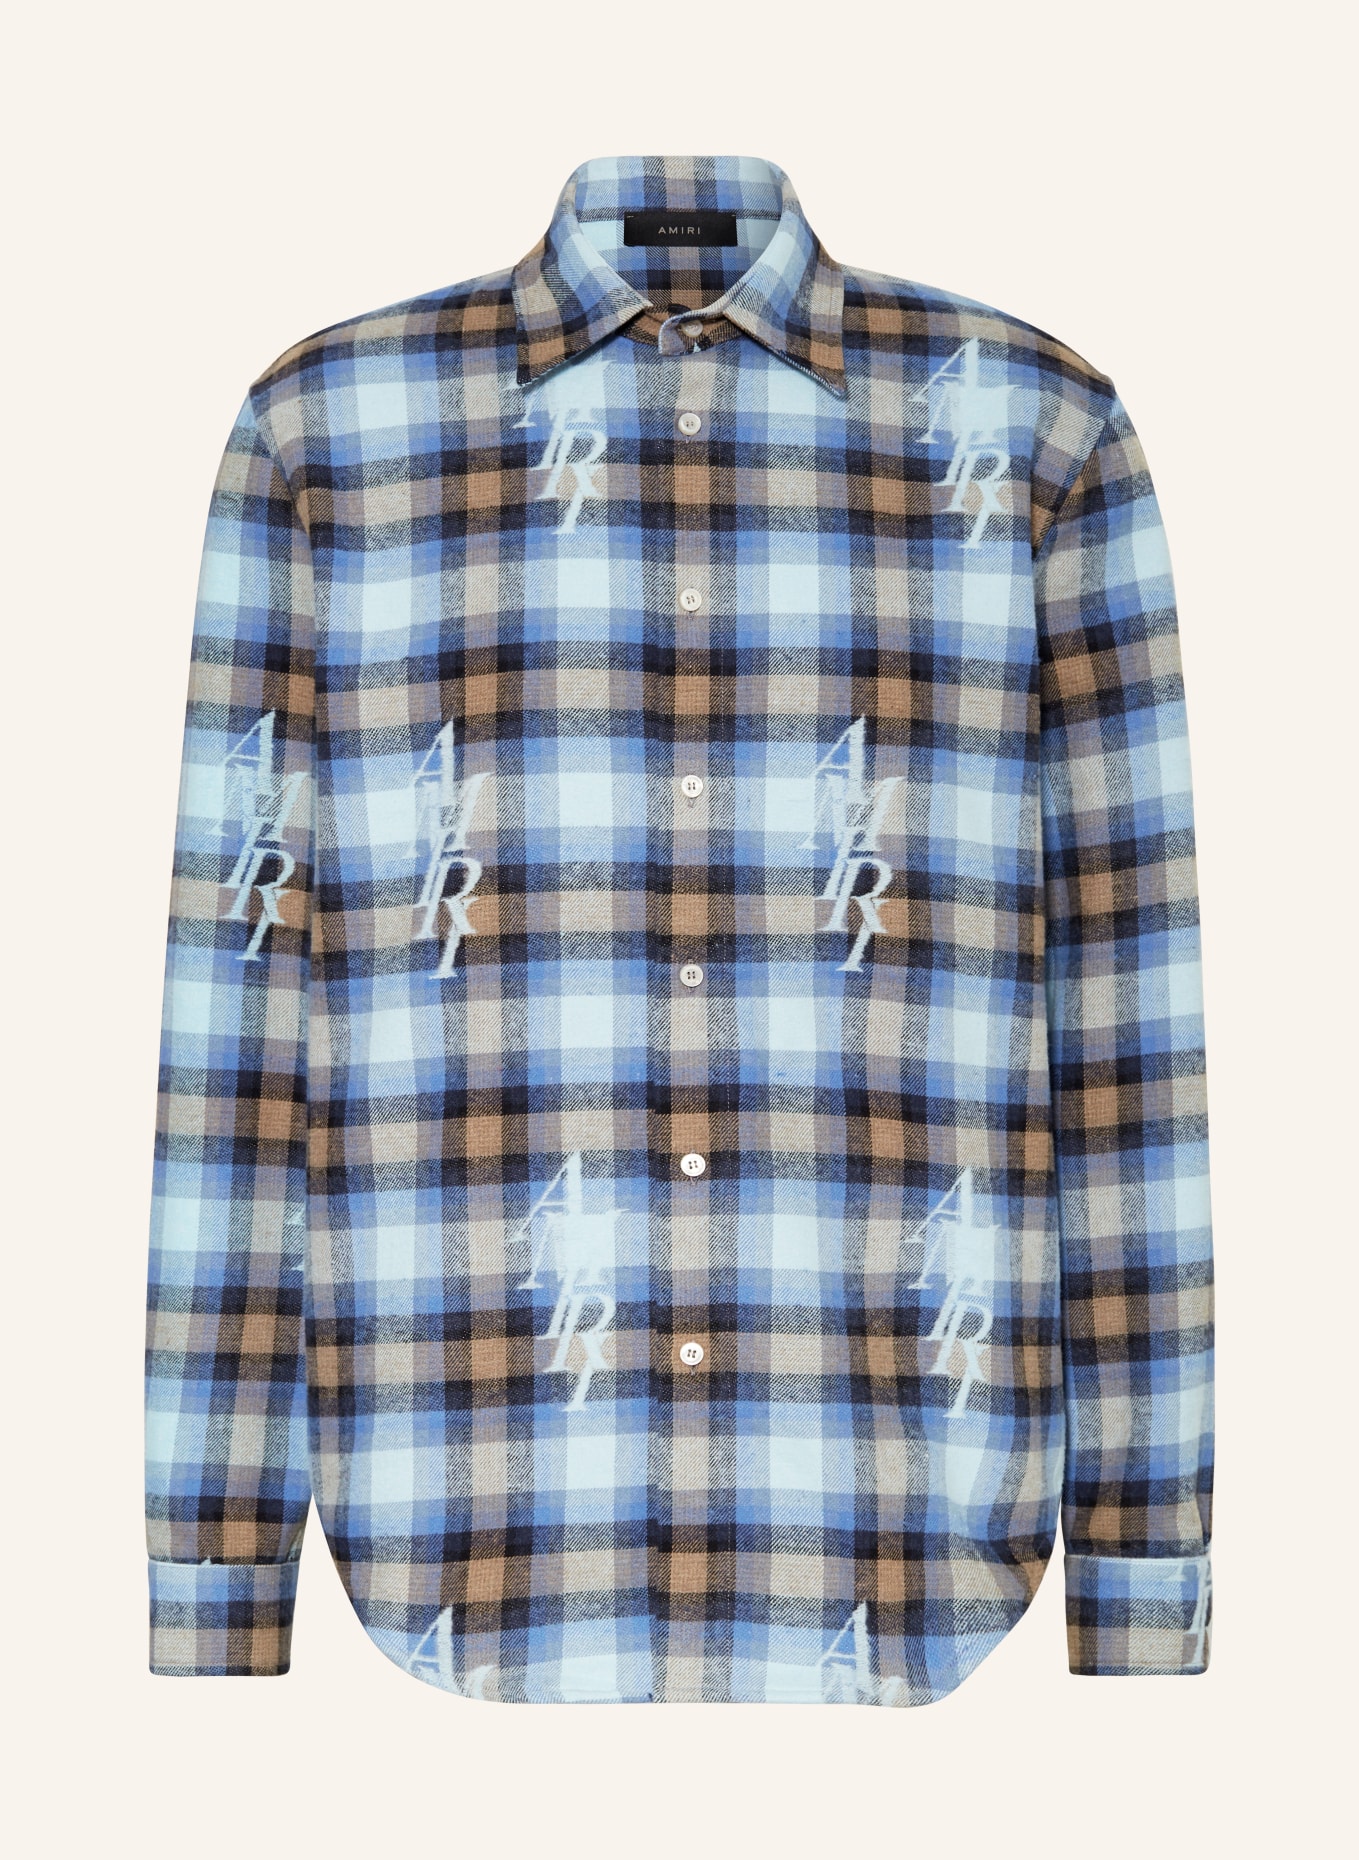 AMIRI Flannel shirt regular fit, Color: BLUE/ DARK BLUE/ BEIGE (Image 1)